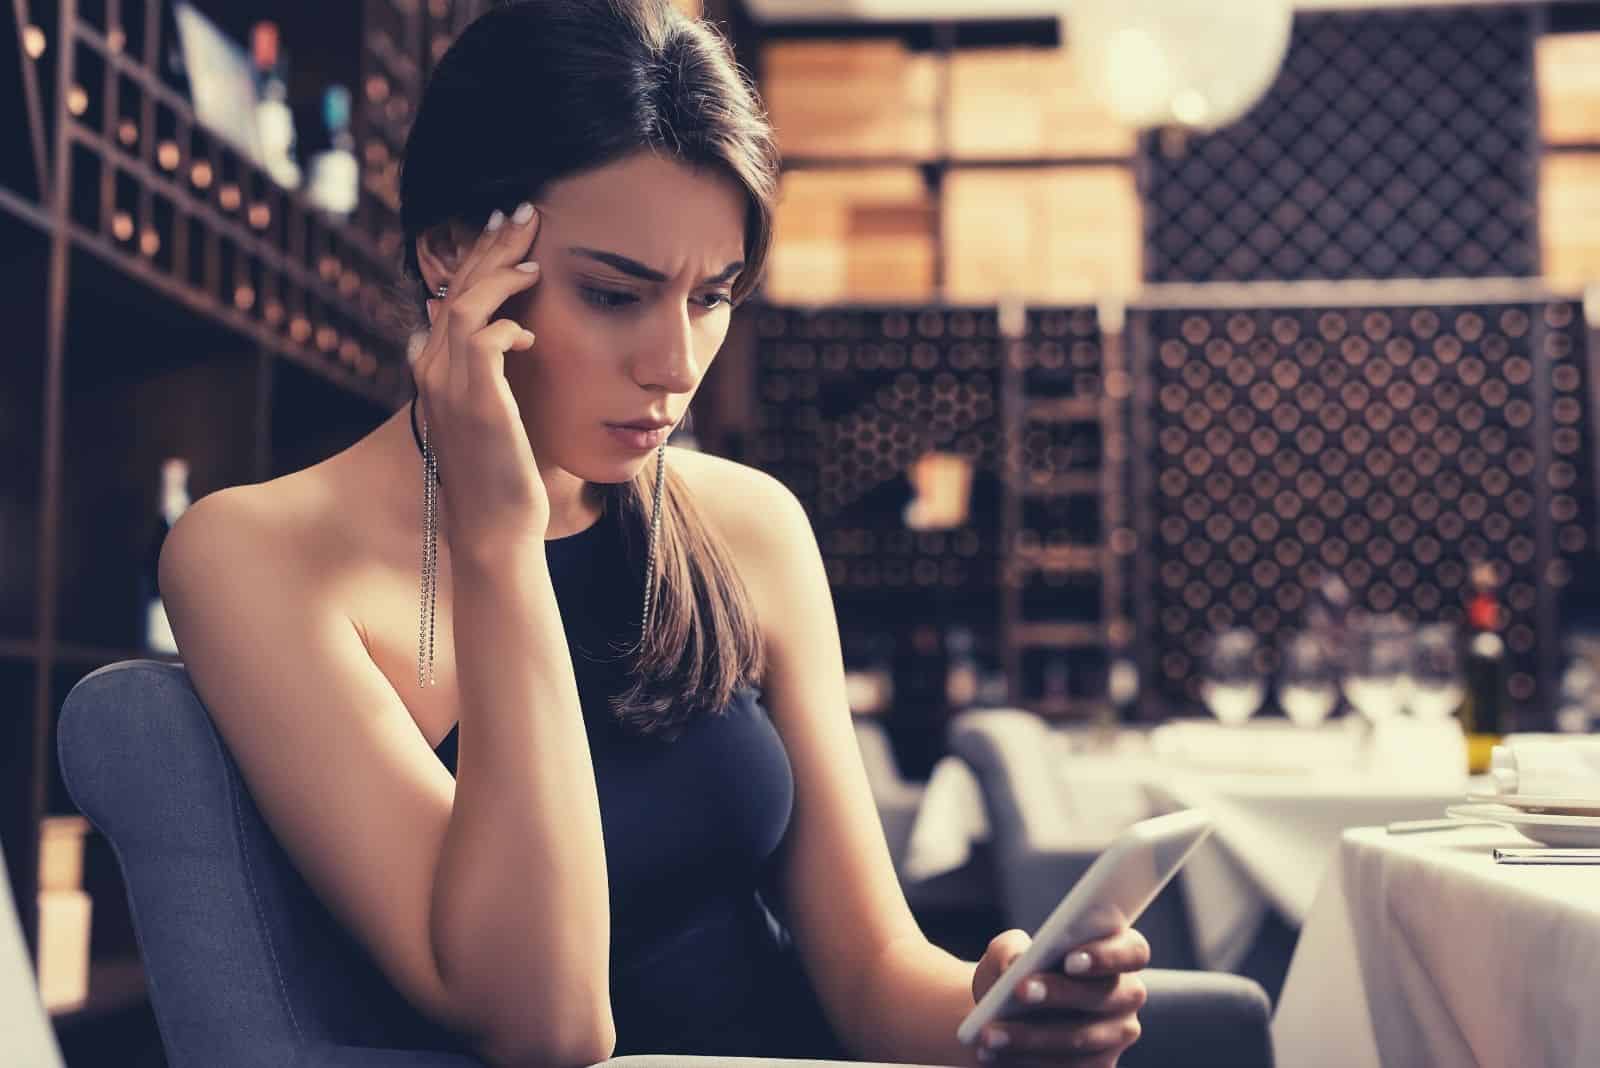 Enfoque selectivo de una mujer pensativa sentada en un restaurante que mira confusa su teléfono móvil.